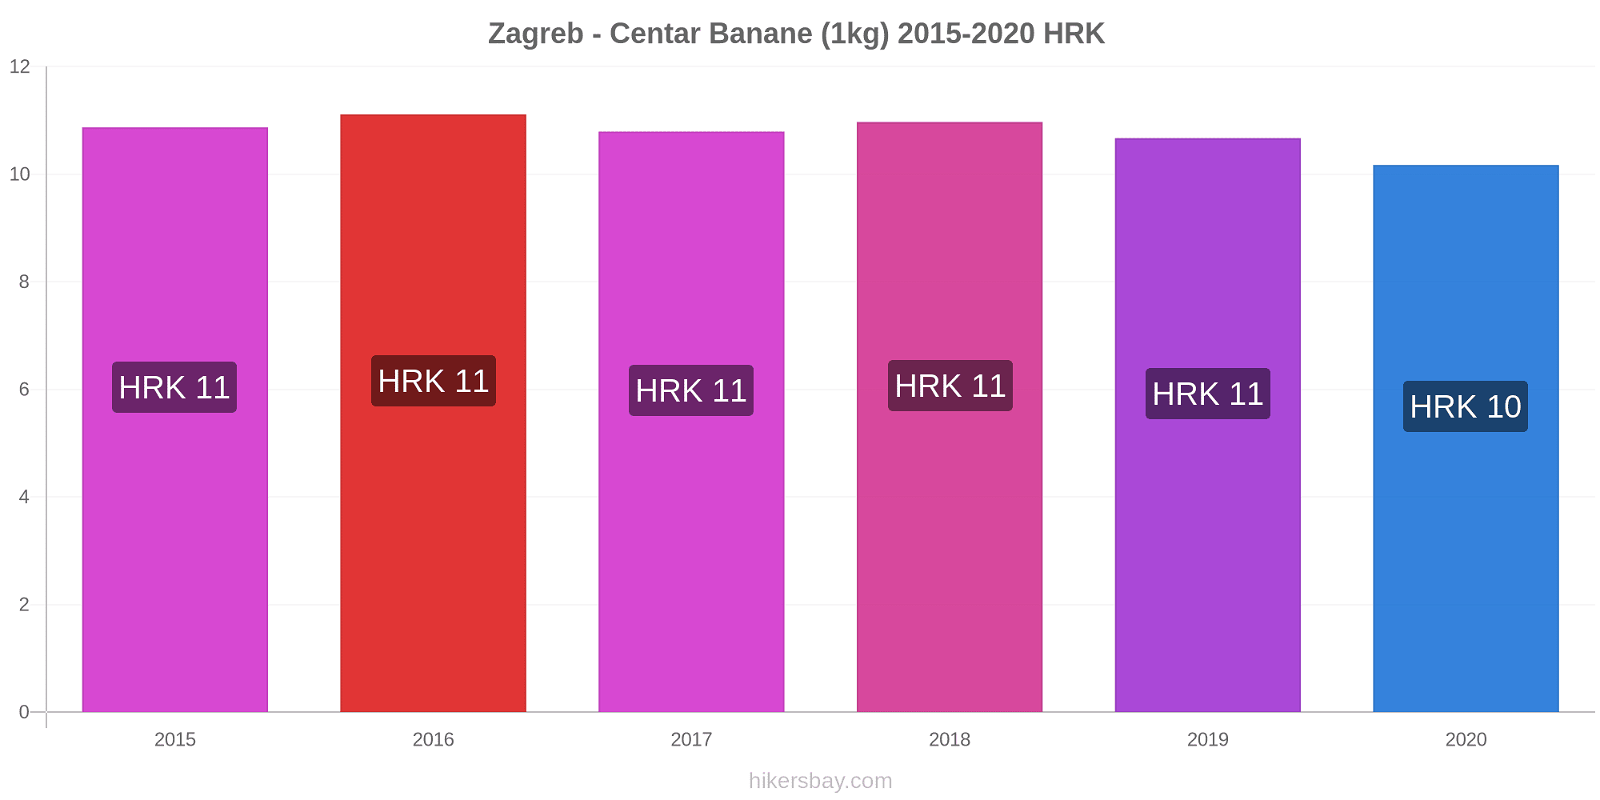 Zagreb - Centar variazioni di prezzo Banana (1kg) hikersbay.com